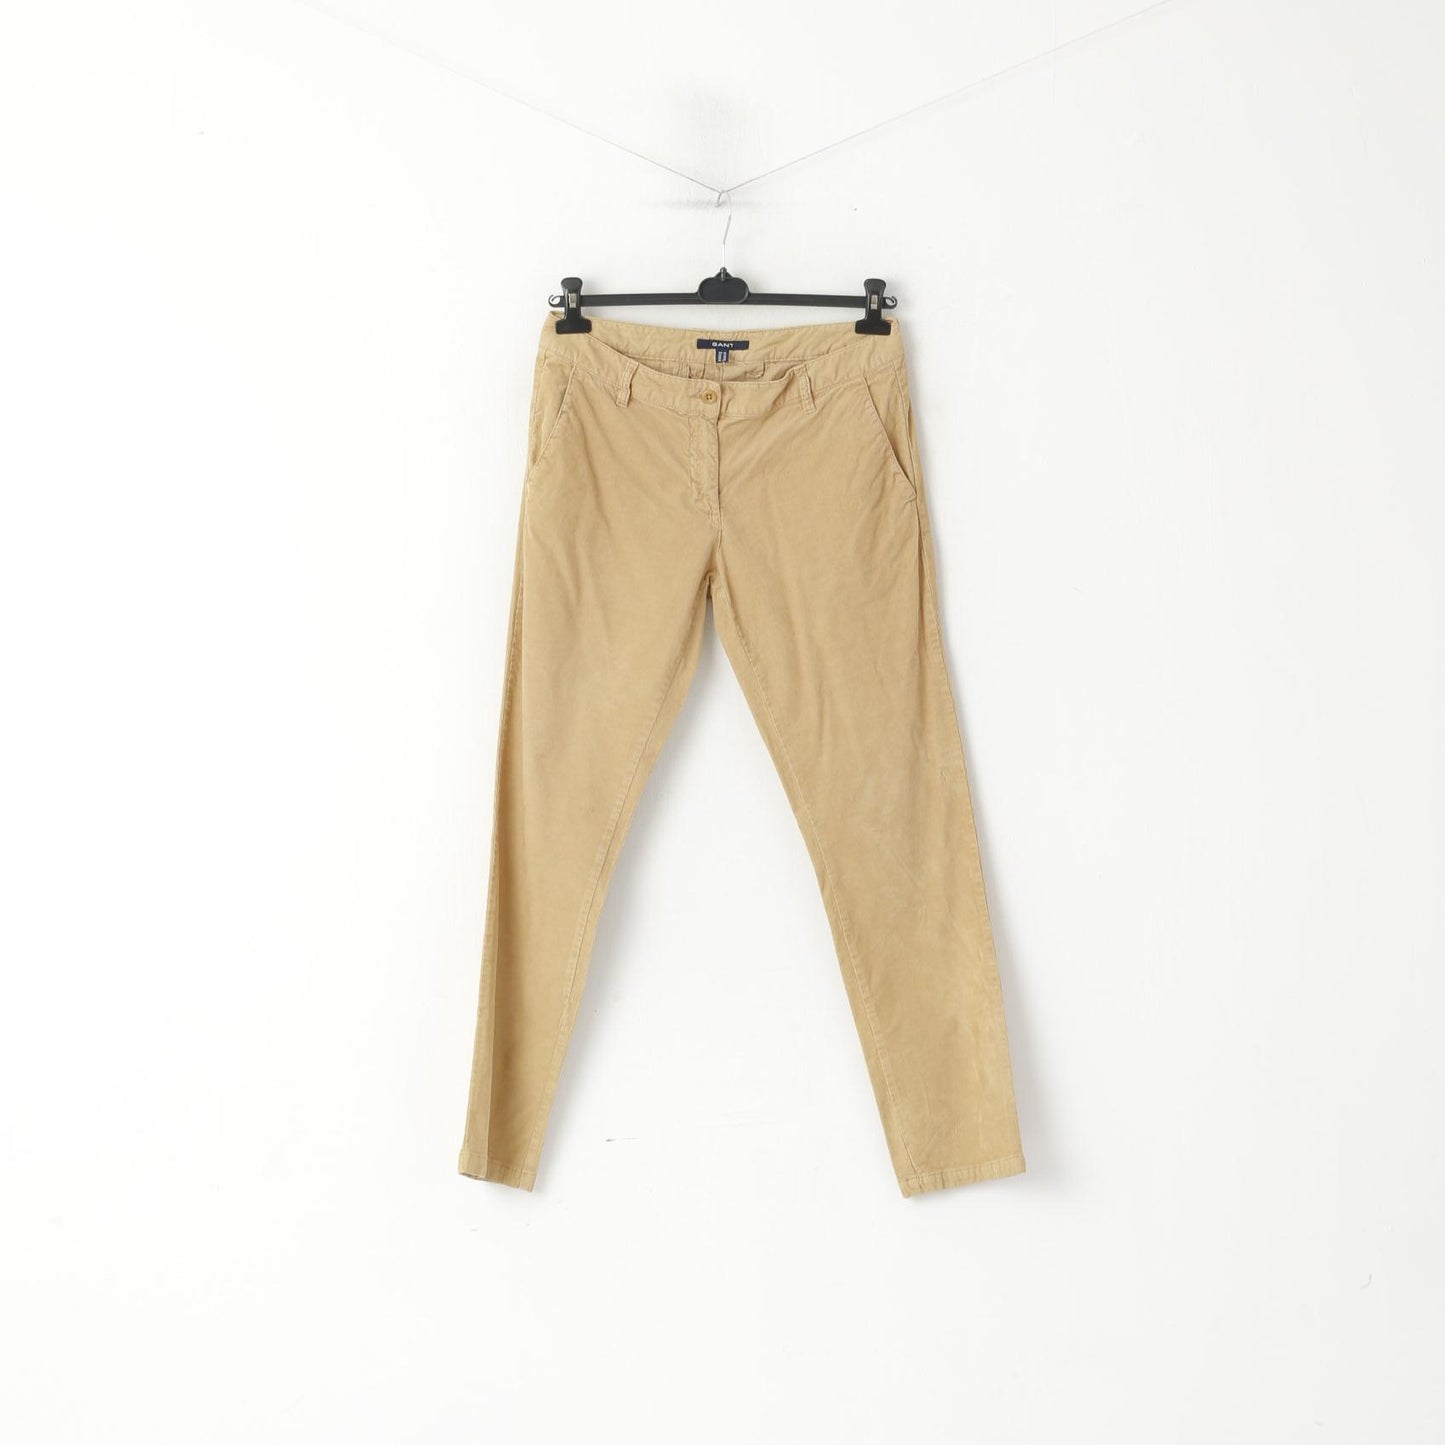 GANT Women 10 14 40 Trousers Camel Cotton Corduroy Classic Pants